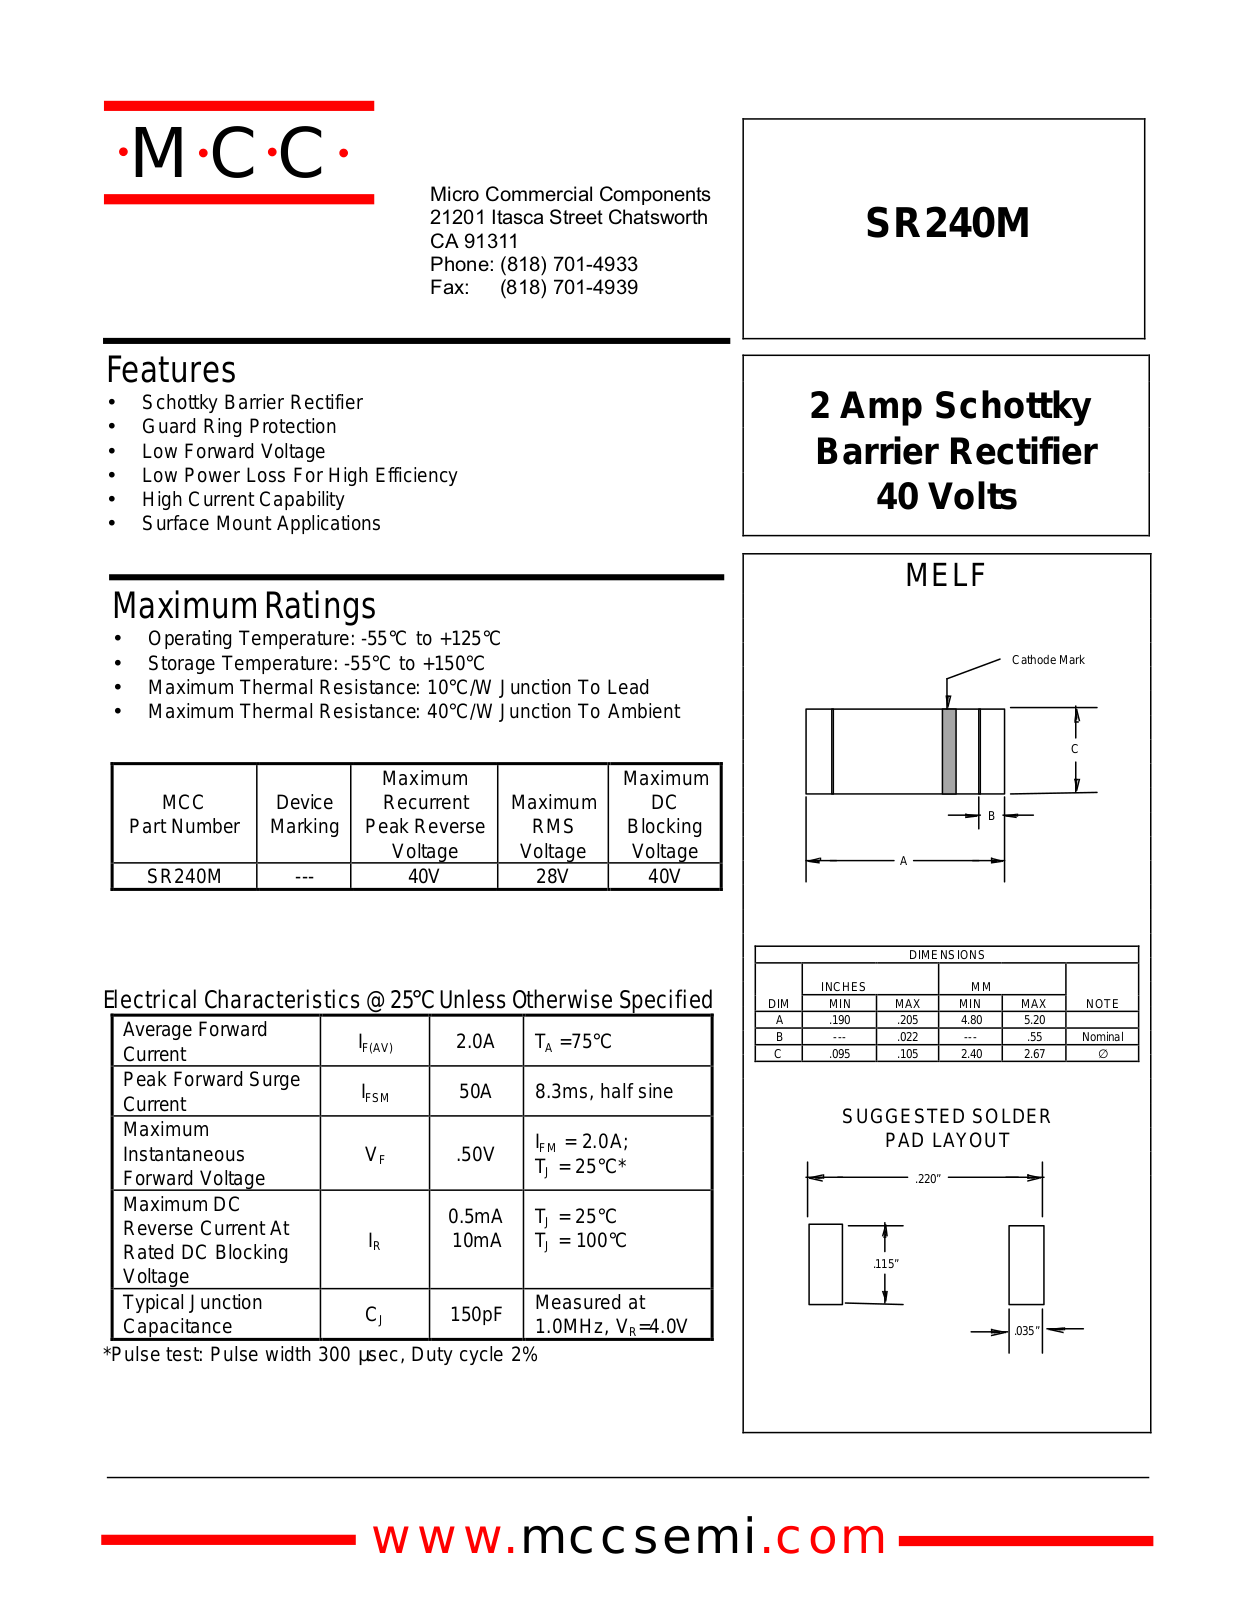 MCC SR240M Datasheet